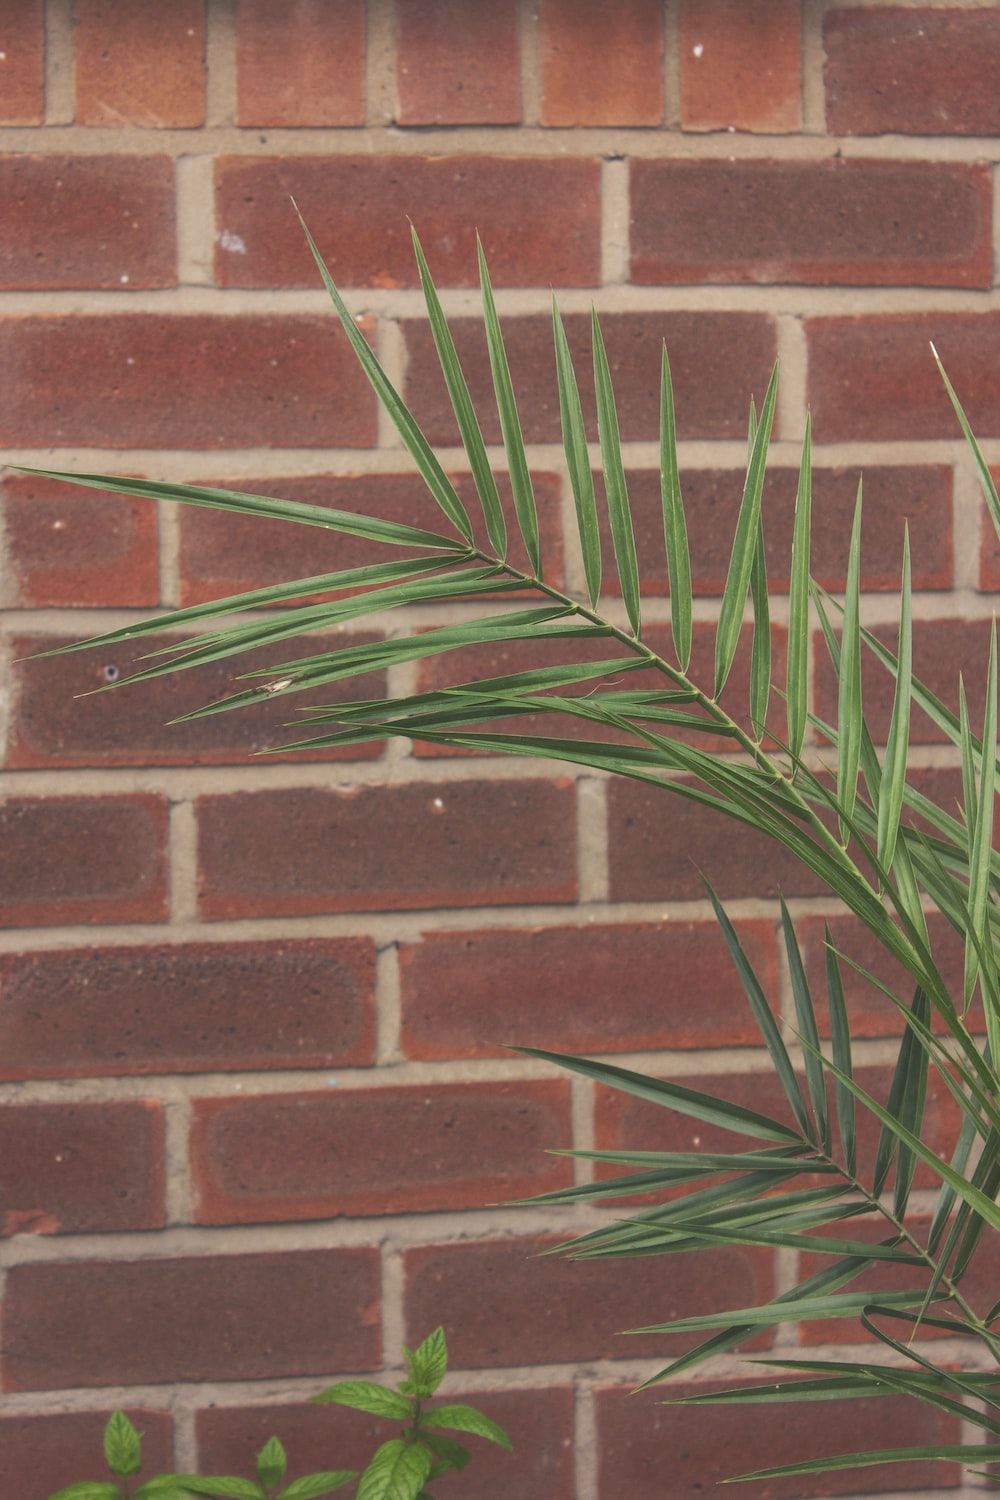  Ziegel Hintergrundbild 1000x1500. Foto zum Thema grüne Pflanze neben brauner Ziegelmauer